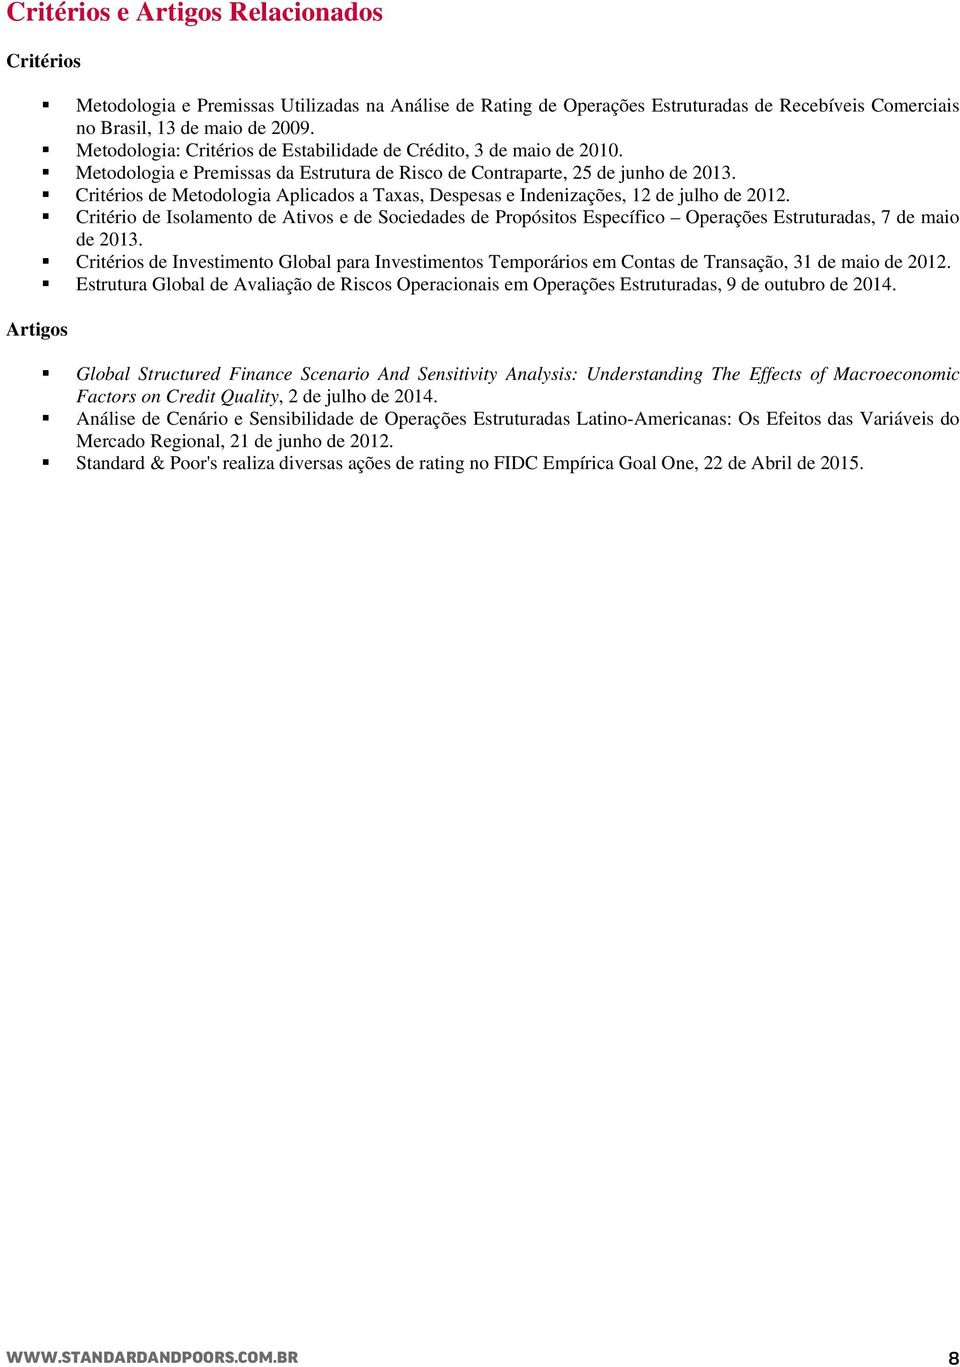 Critérios de Metodologia Aplicados a Taxas, Despesas e Indenizações, 12 de julho de 2012.